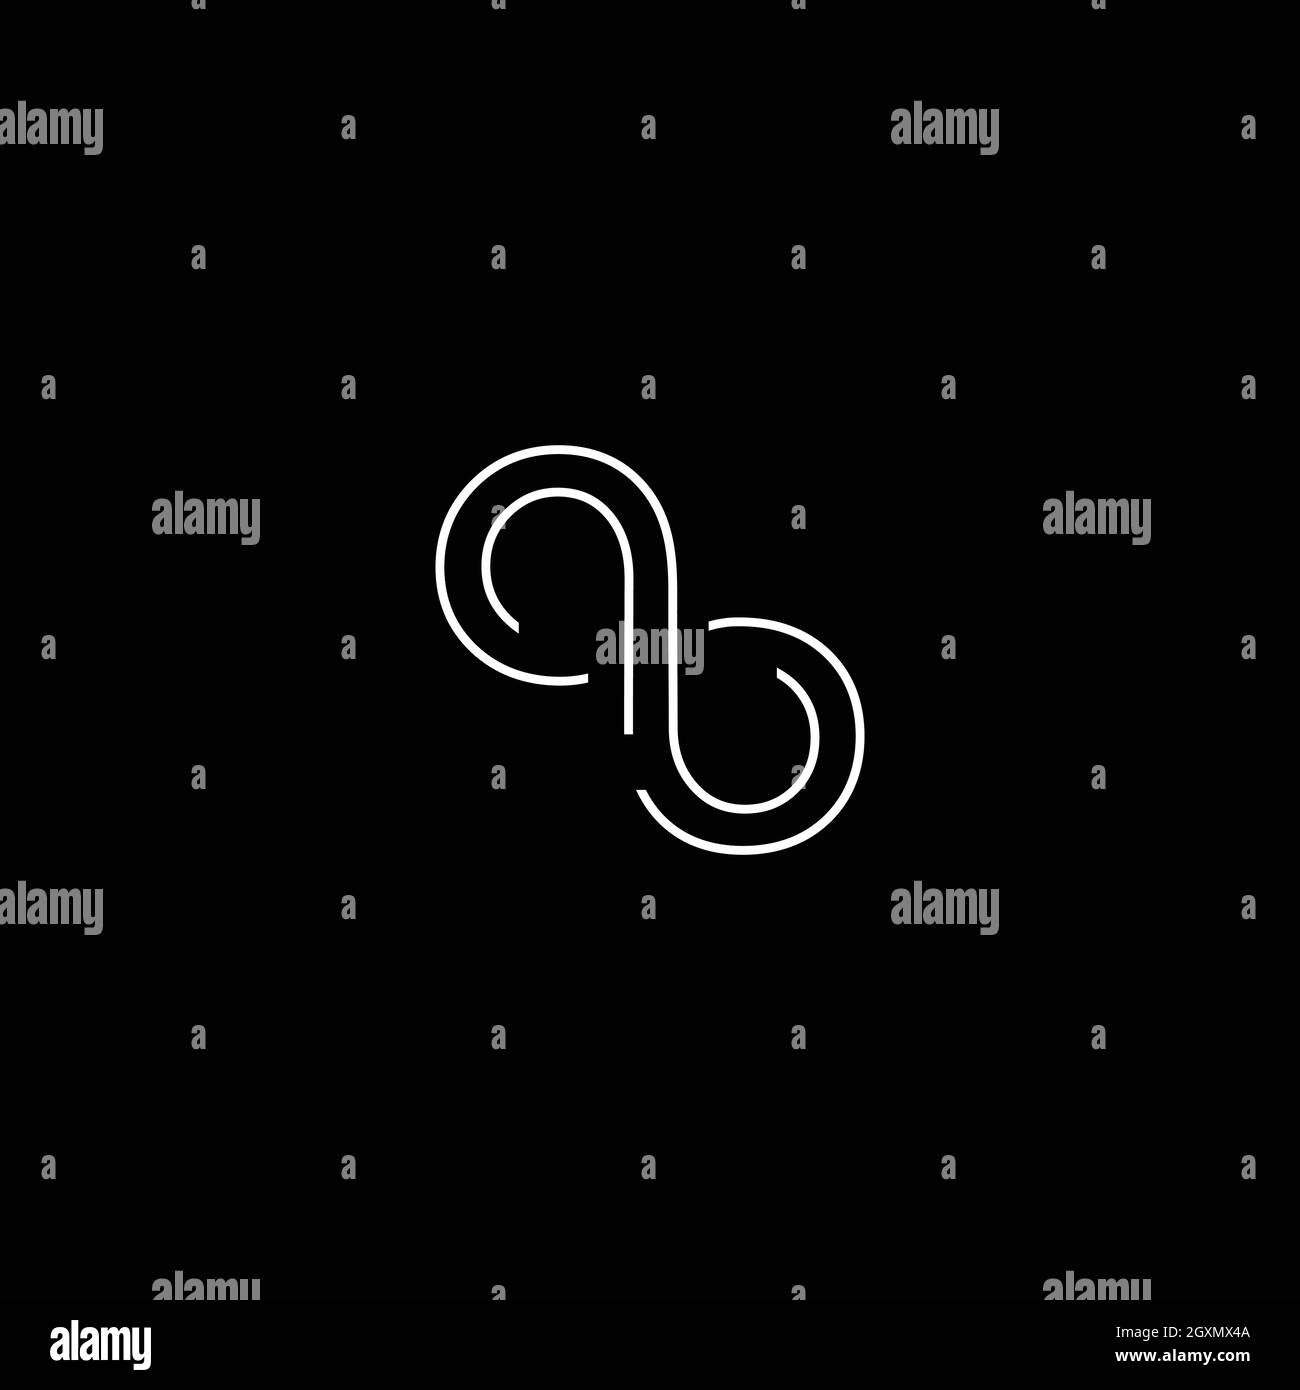 Lettre AB ou logo Infinity Design avec espace négatif de dessin au trait pour l'utilisation de l'illustration Illustration de Vecteur